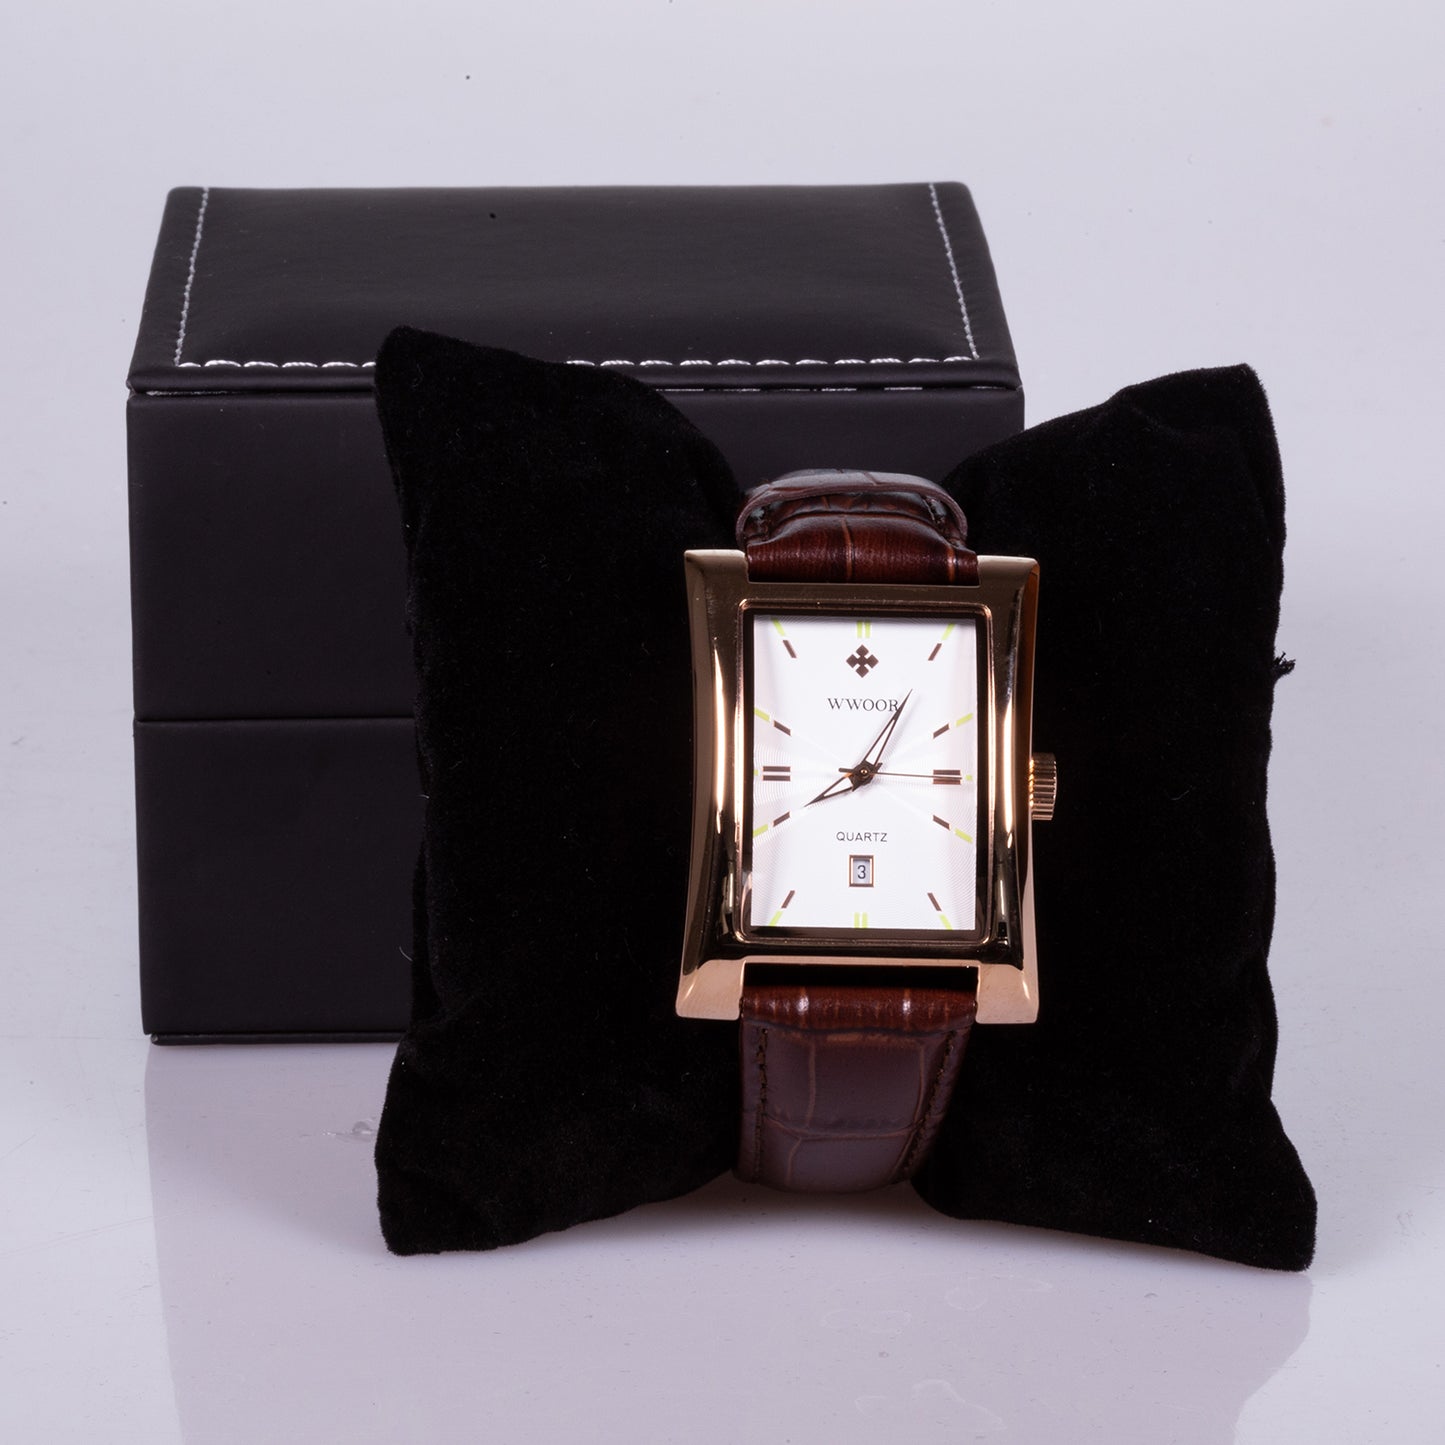 Relógio em Aço Inoxidável com Caixa Dourada e Bracelete em Pele Genuína Castanha